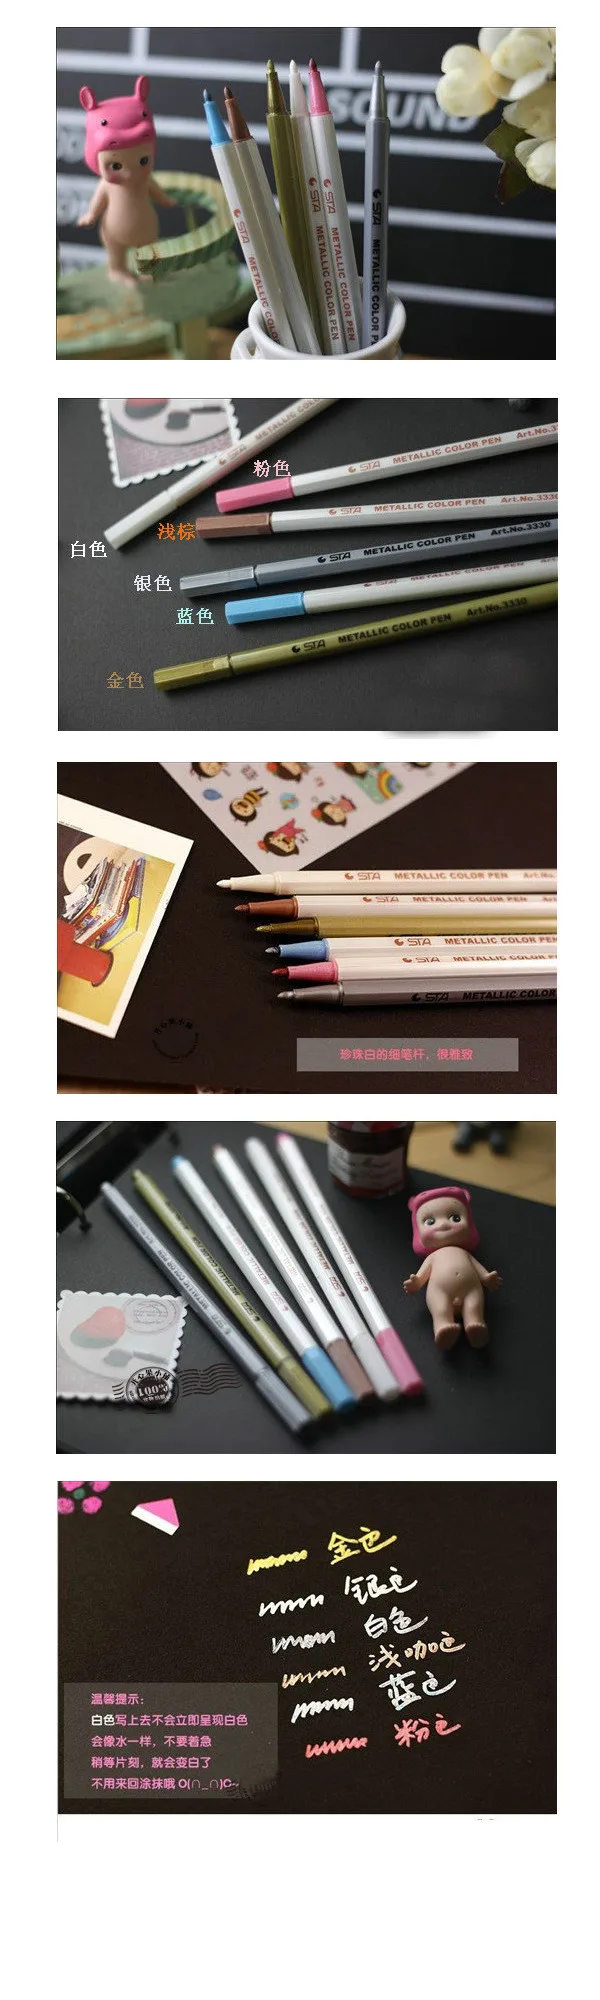 STA 10 Цвета/набор металлических маркер DIY Скрапбукинг ремесел Водонепроницаемый масло ручка Книги по искусству маркер для канцелярские